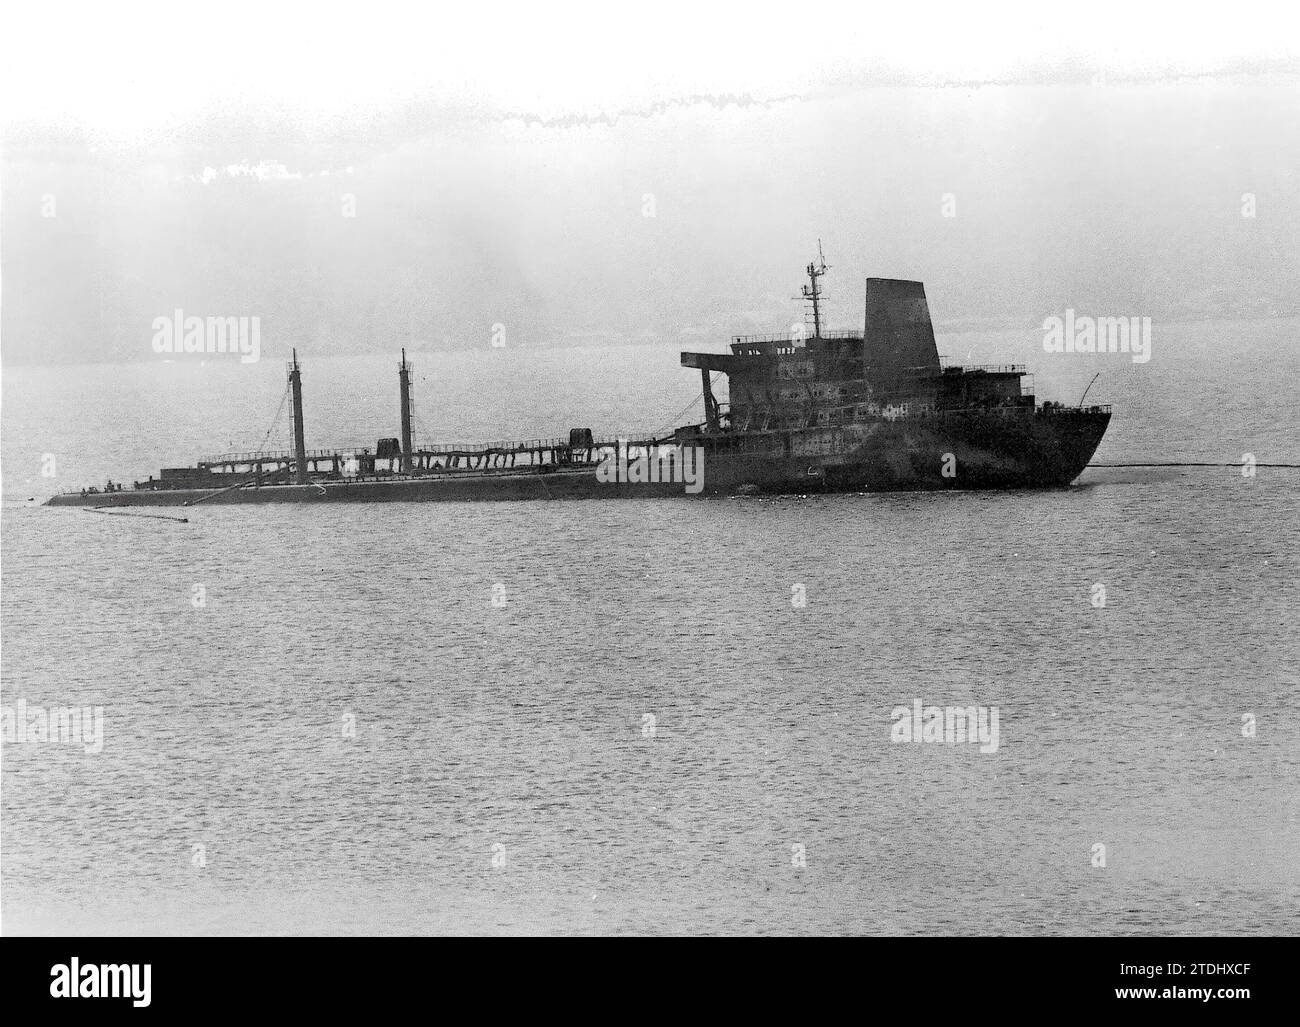 01/07/1977. Stern of the Urquiola stranded in the Ares estuary (La Coruña). Credit: Album / Archivo ABC / Ángel Carchenilla Stock Photo